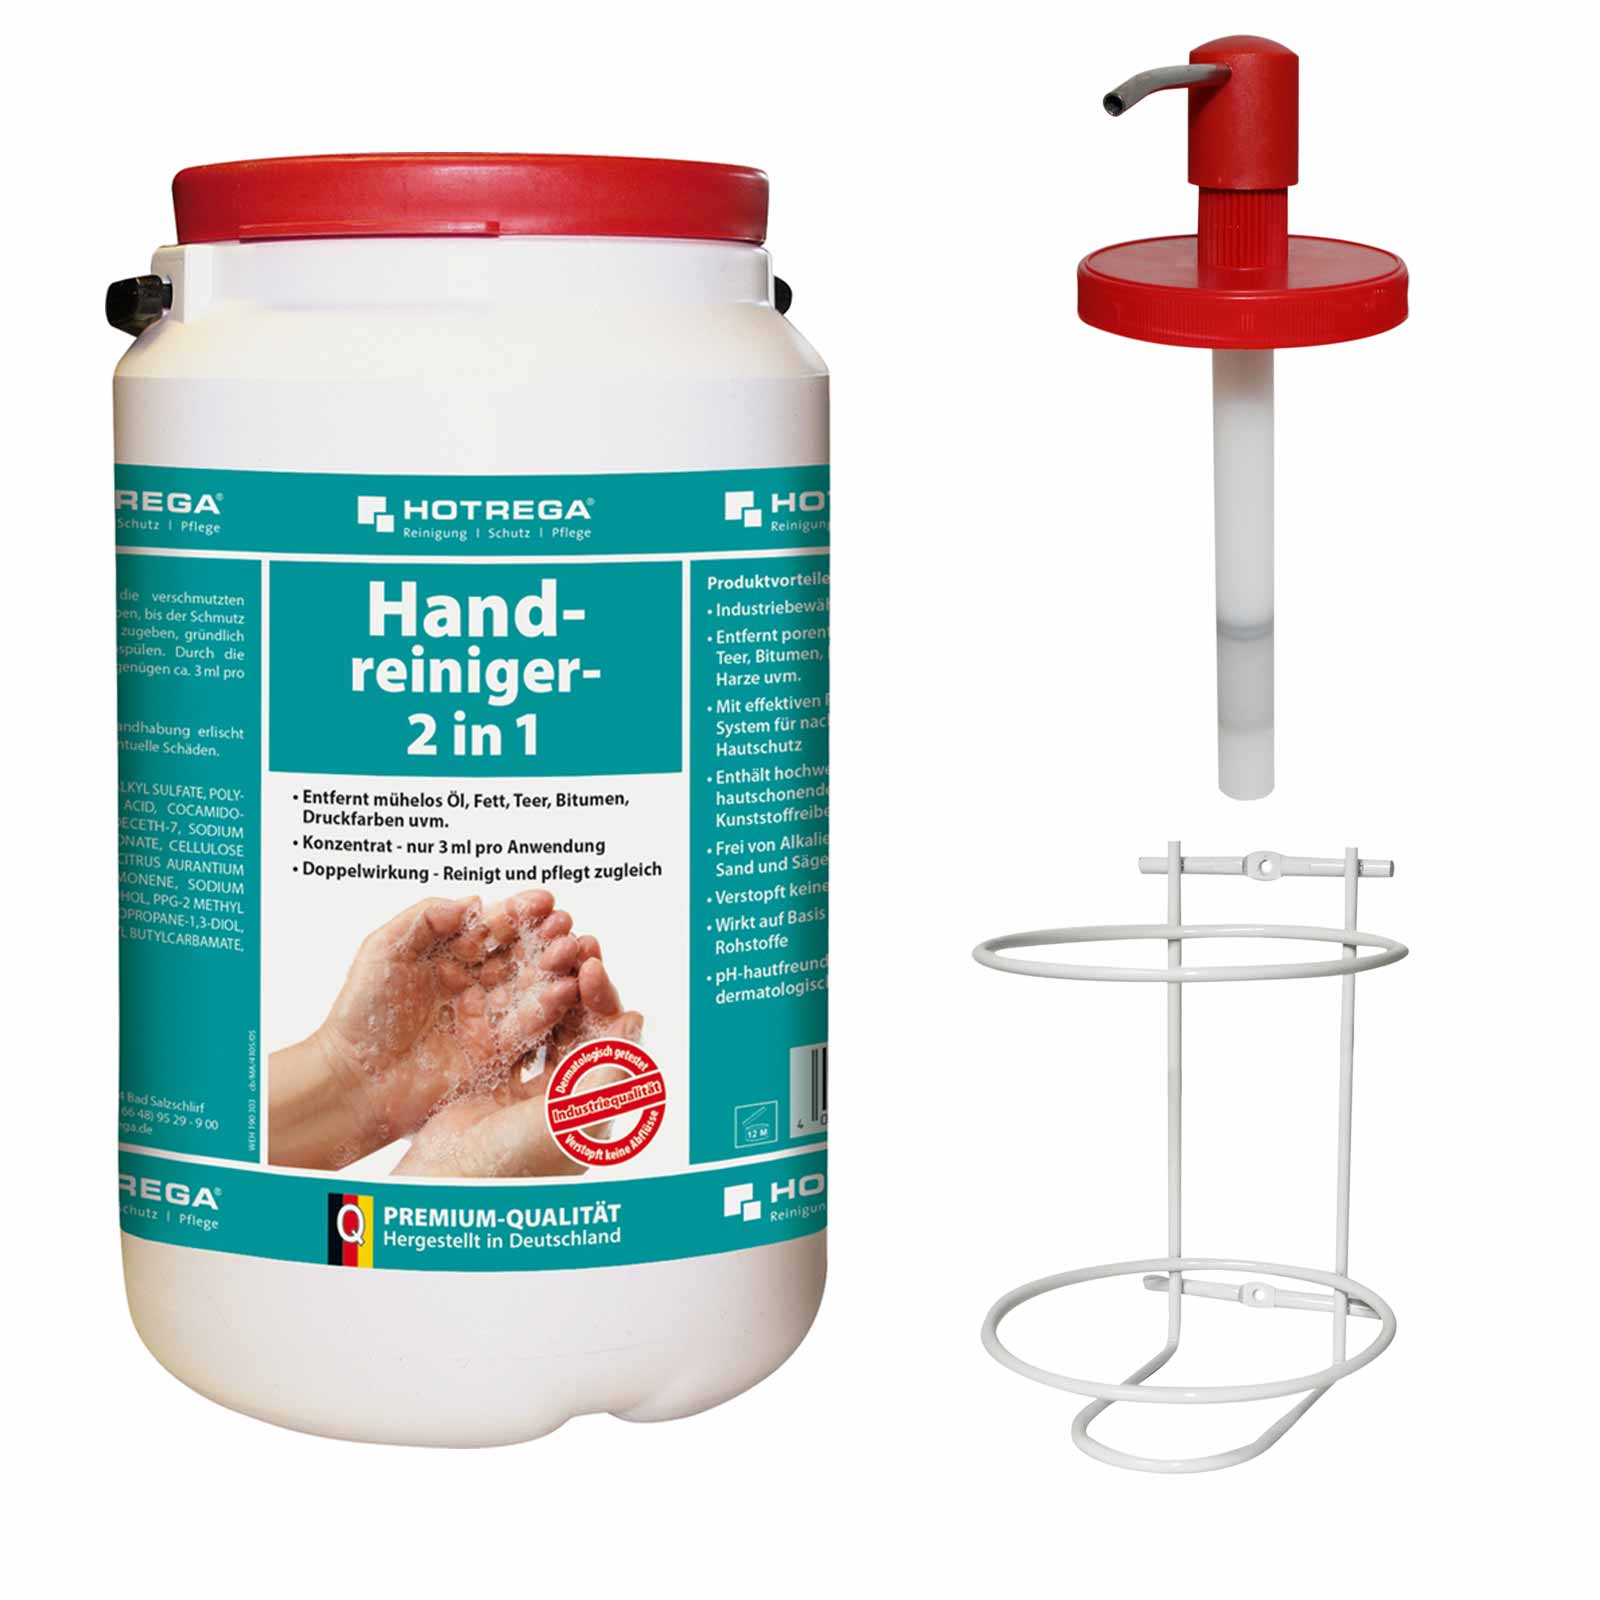 HOTREGA Handreiniger Hautreiniger Handpflege Hautpflege 2in1 3L mit Dosiersystem von HOTREGA